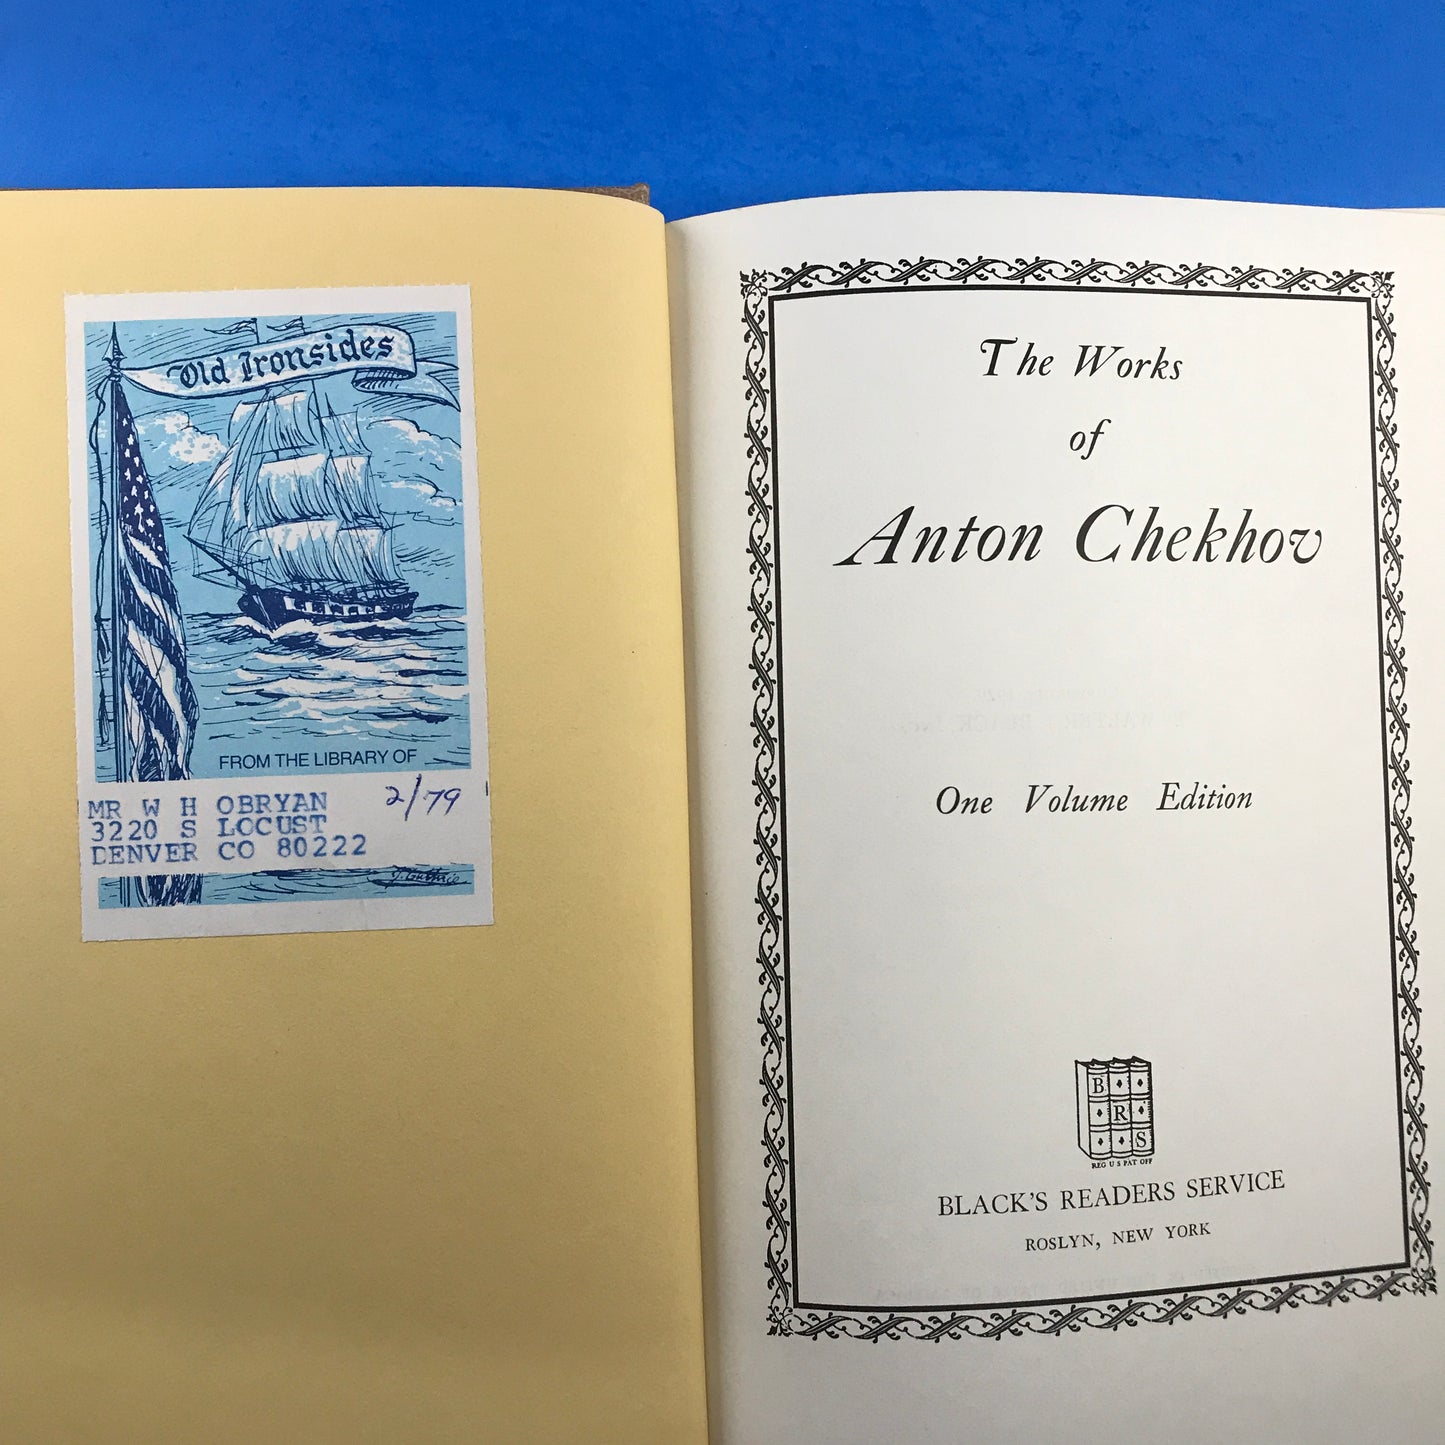 The Works of Anton Chekhov